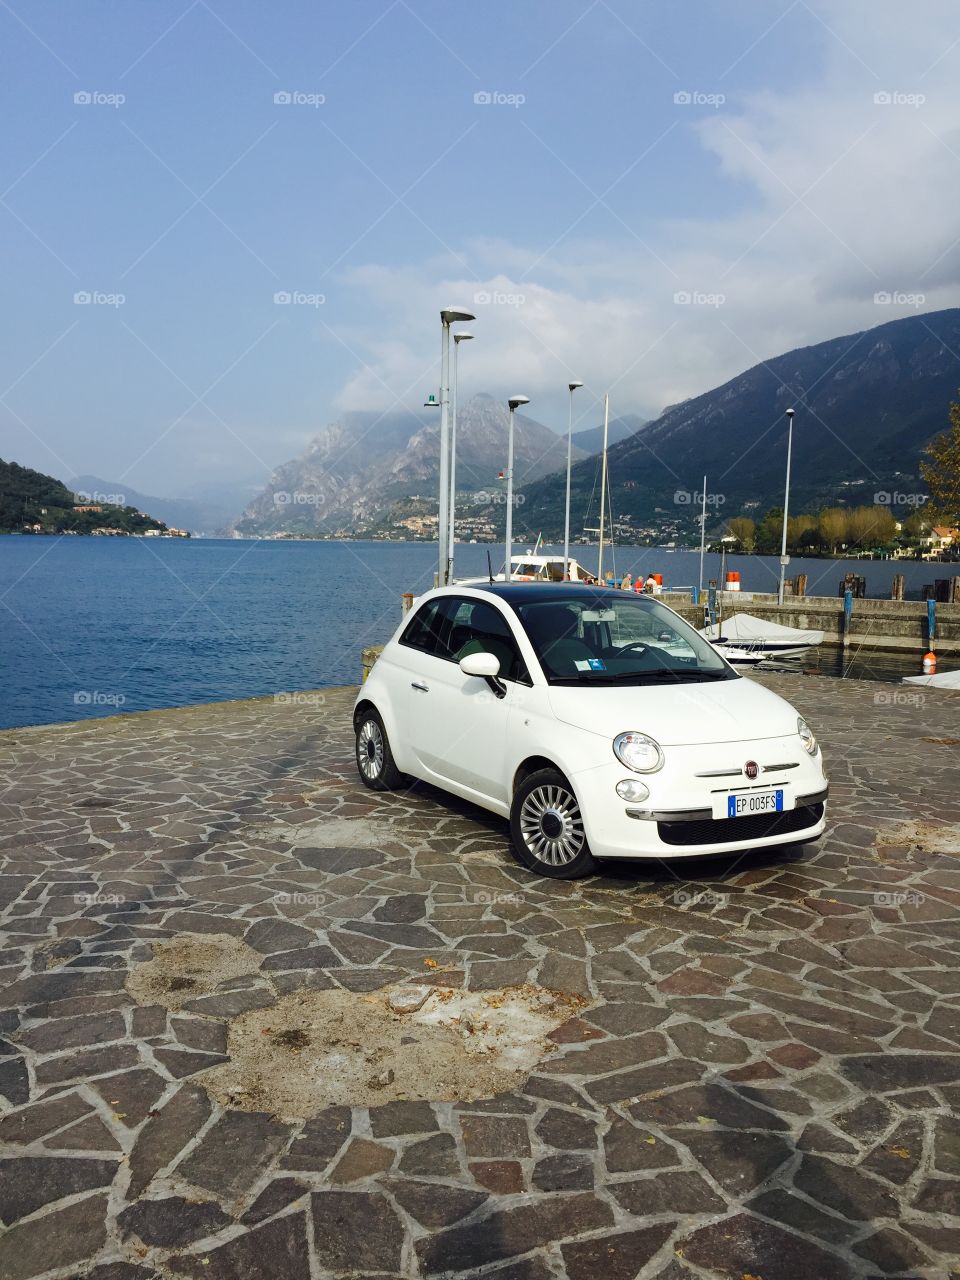 Lake Garda car